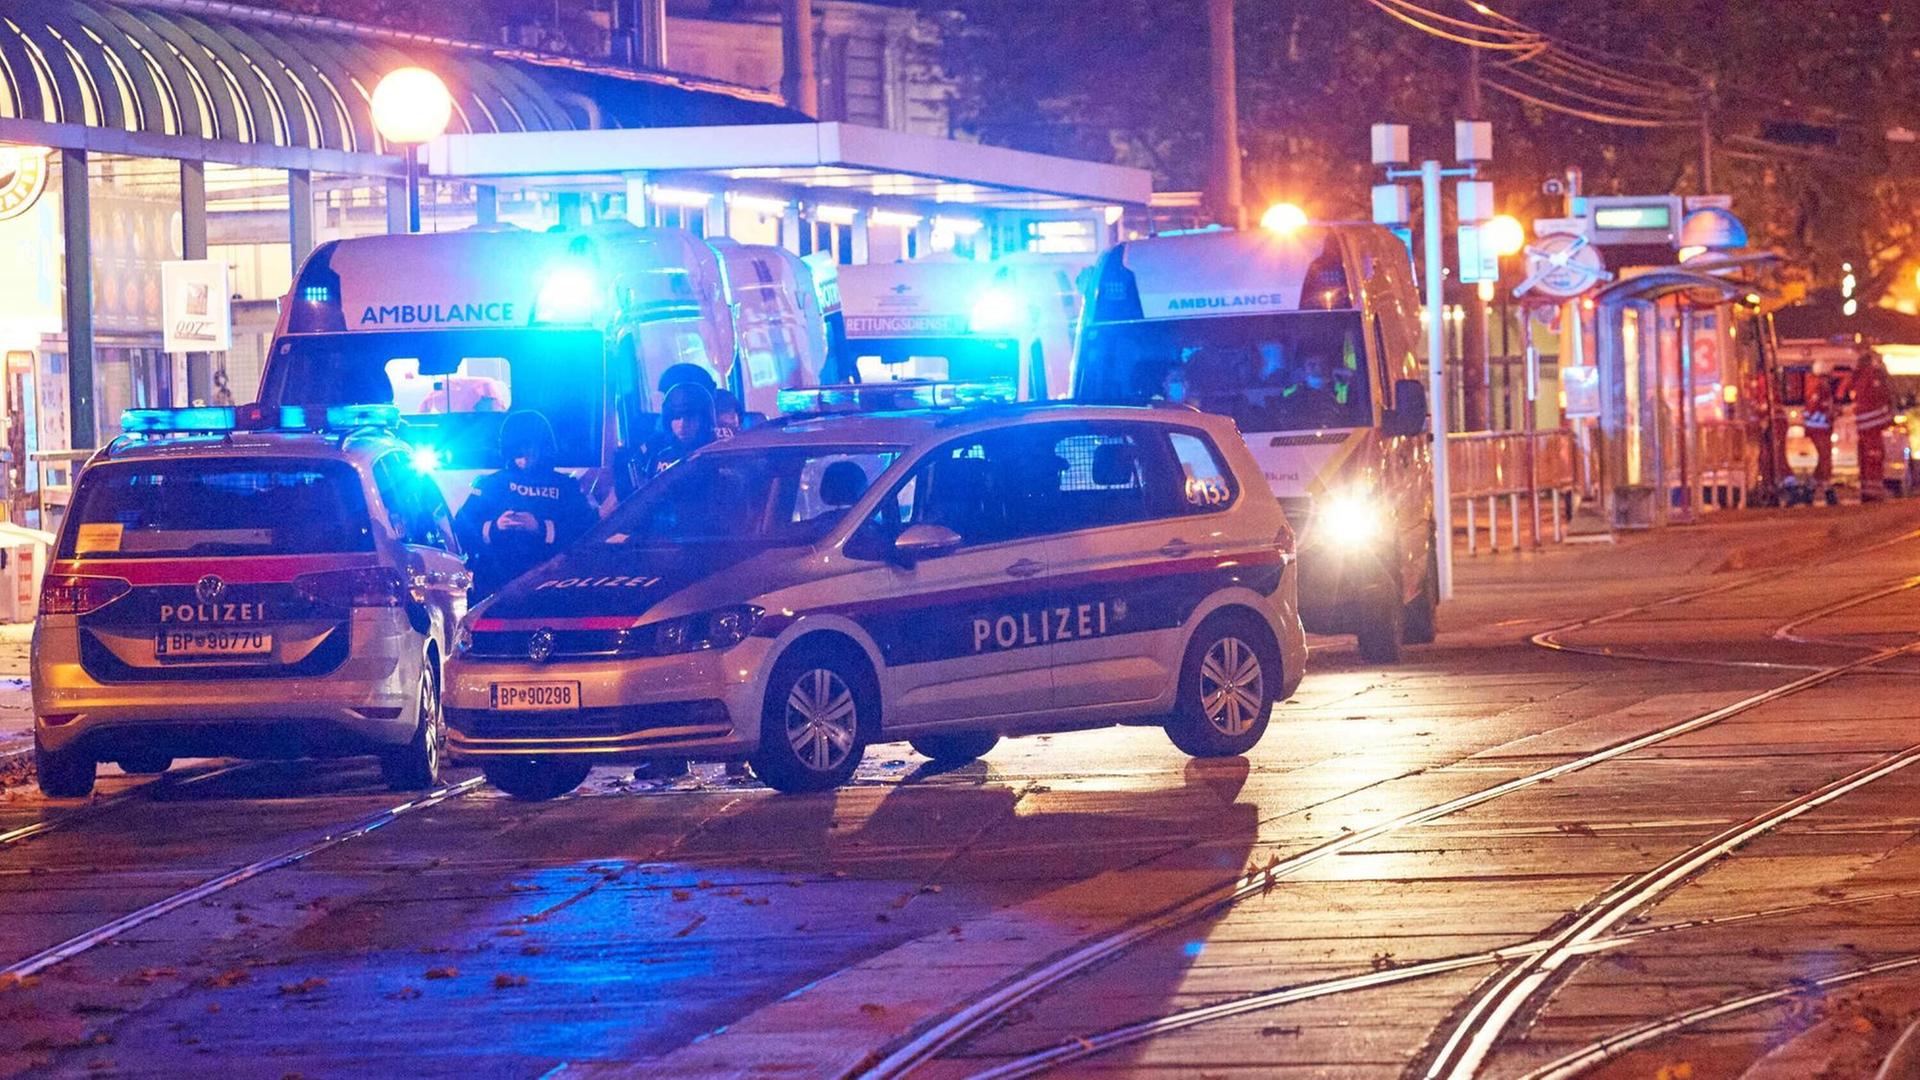 Zwei Polizeiautos in der Wiener Innenstadt nach dem Terroranschlag am 2.11.2020